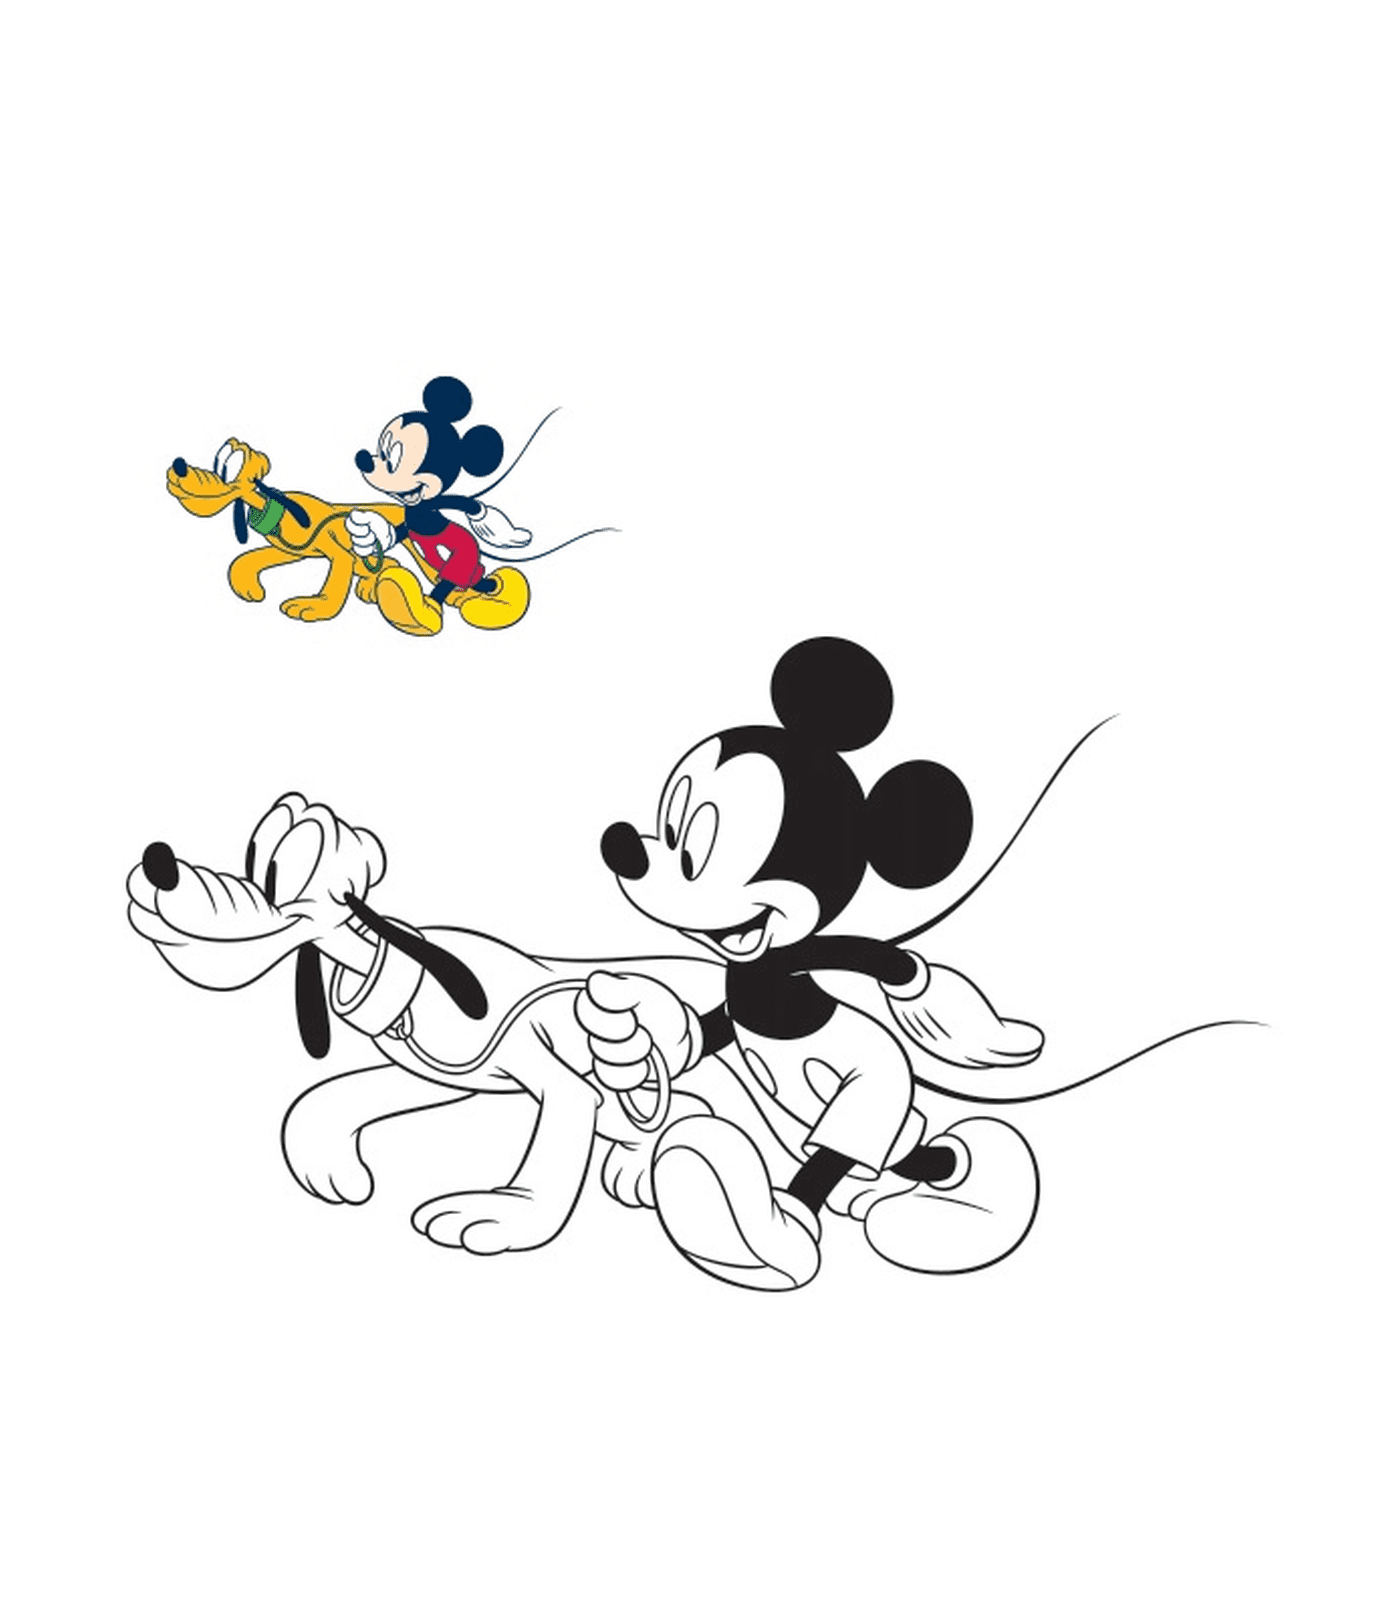  मिकी माउस अपने कुत्ते प्लूटो के साथ चलता है 